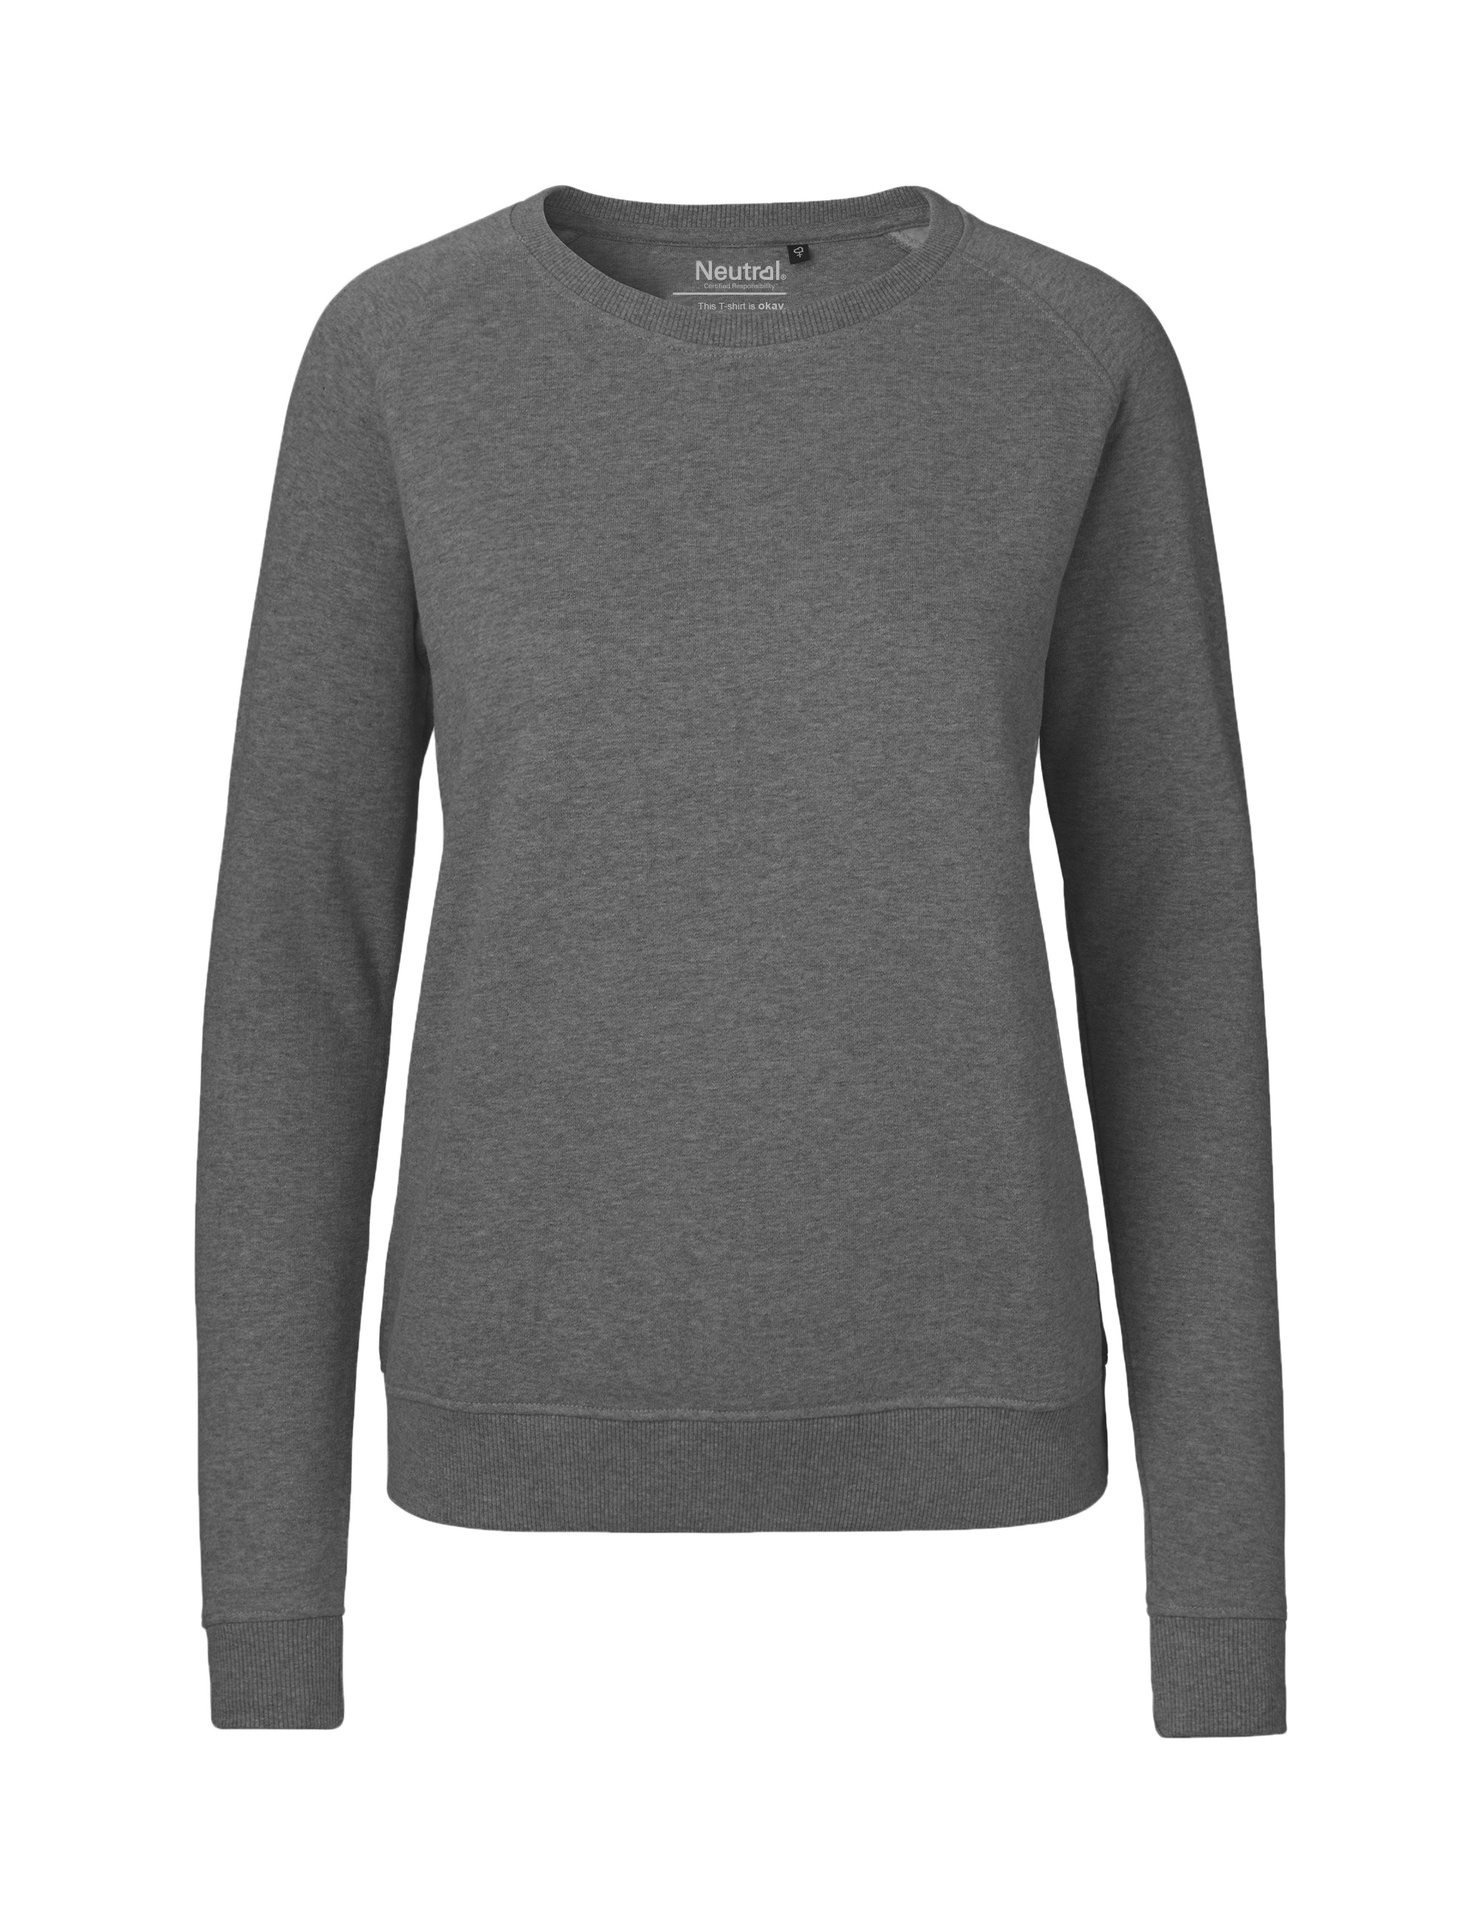 [PR/04876] Ladies Sweatshirt (Dark Heather 08, M)